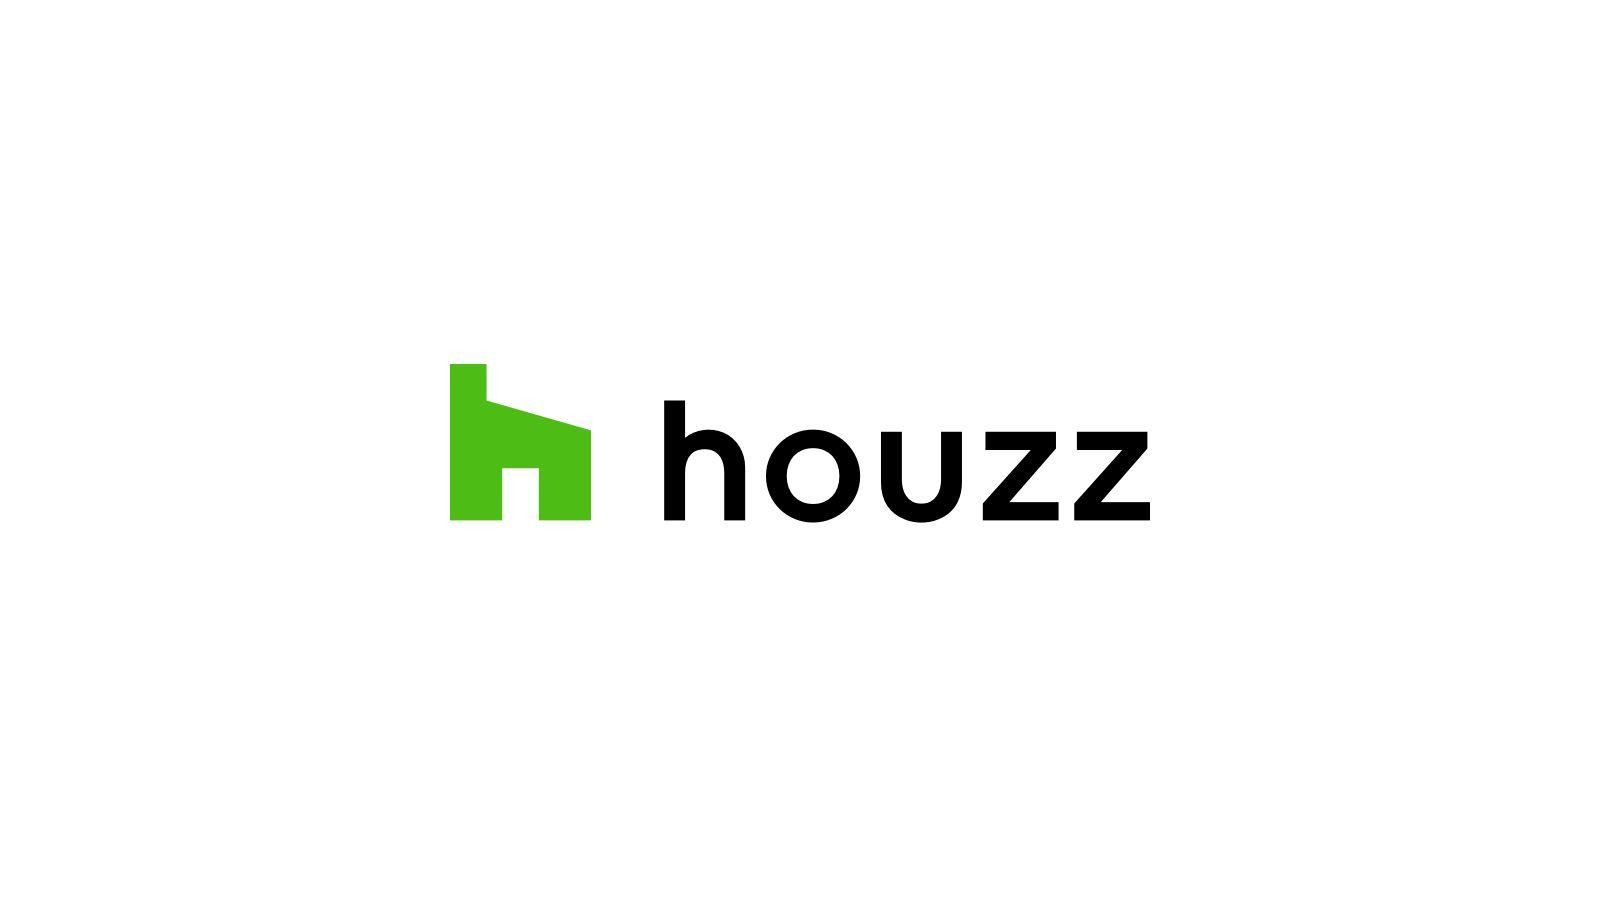 Hou Logo - A Logo Redesign for Houzz – The Houzz Blog